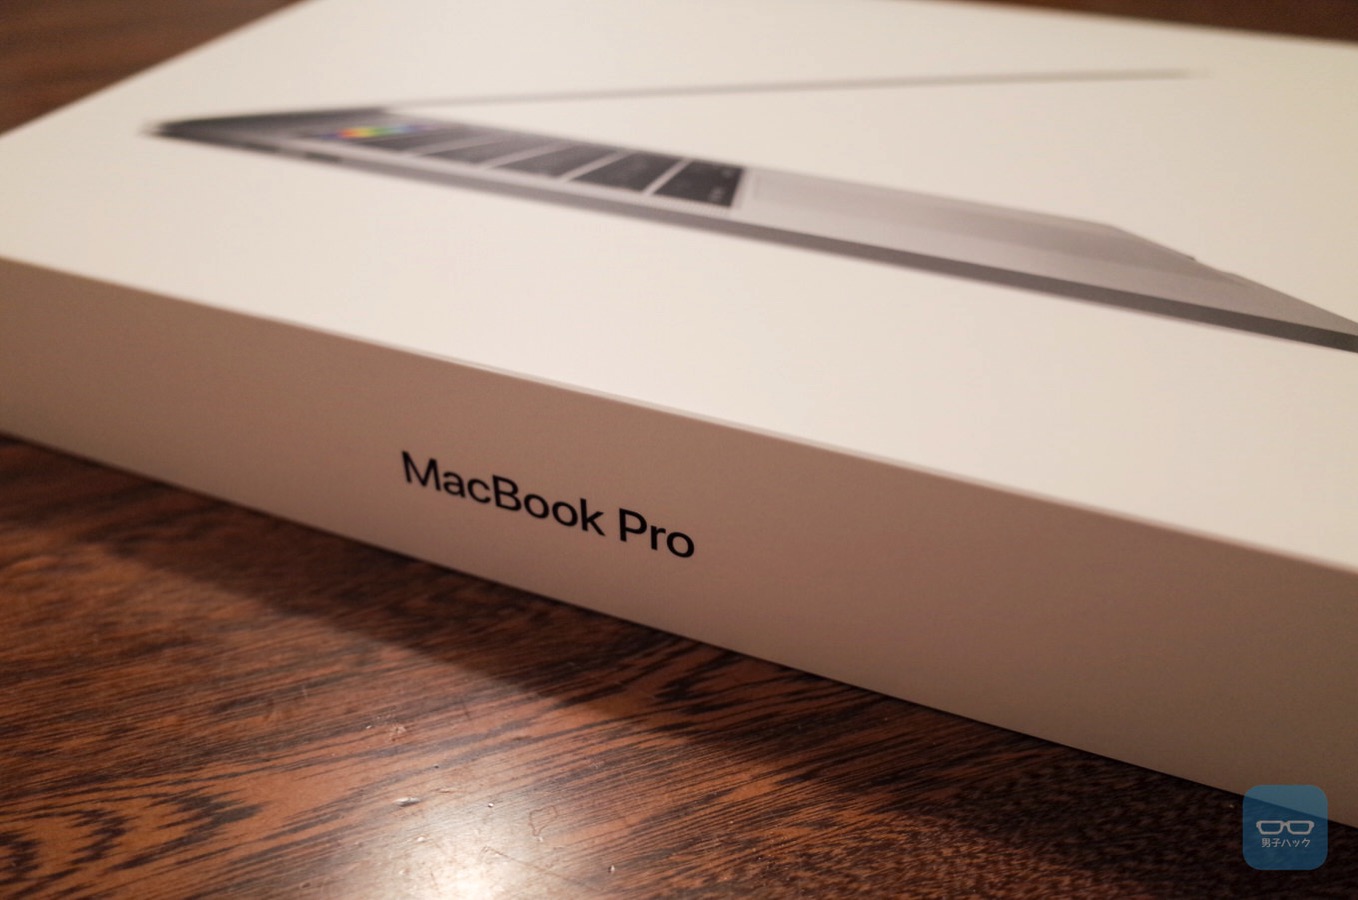 【レビュー】MacBook Pro 15(Late 2016)、Touch Barは思ったよりイケてる